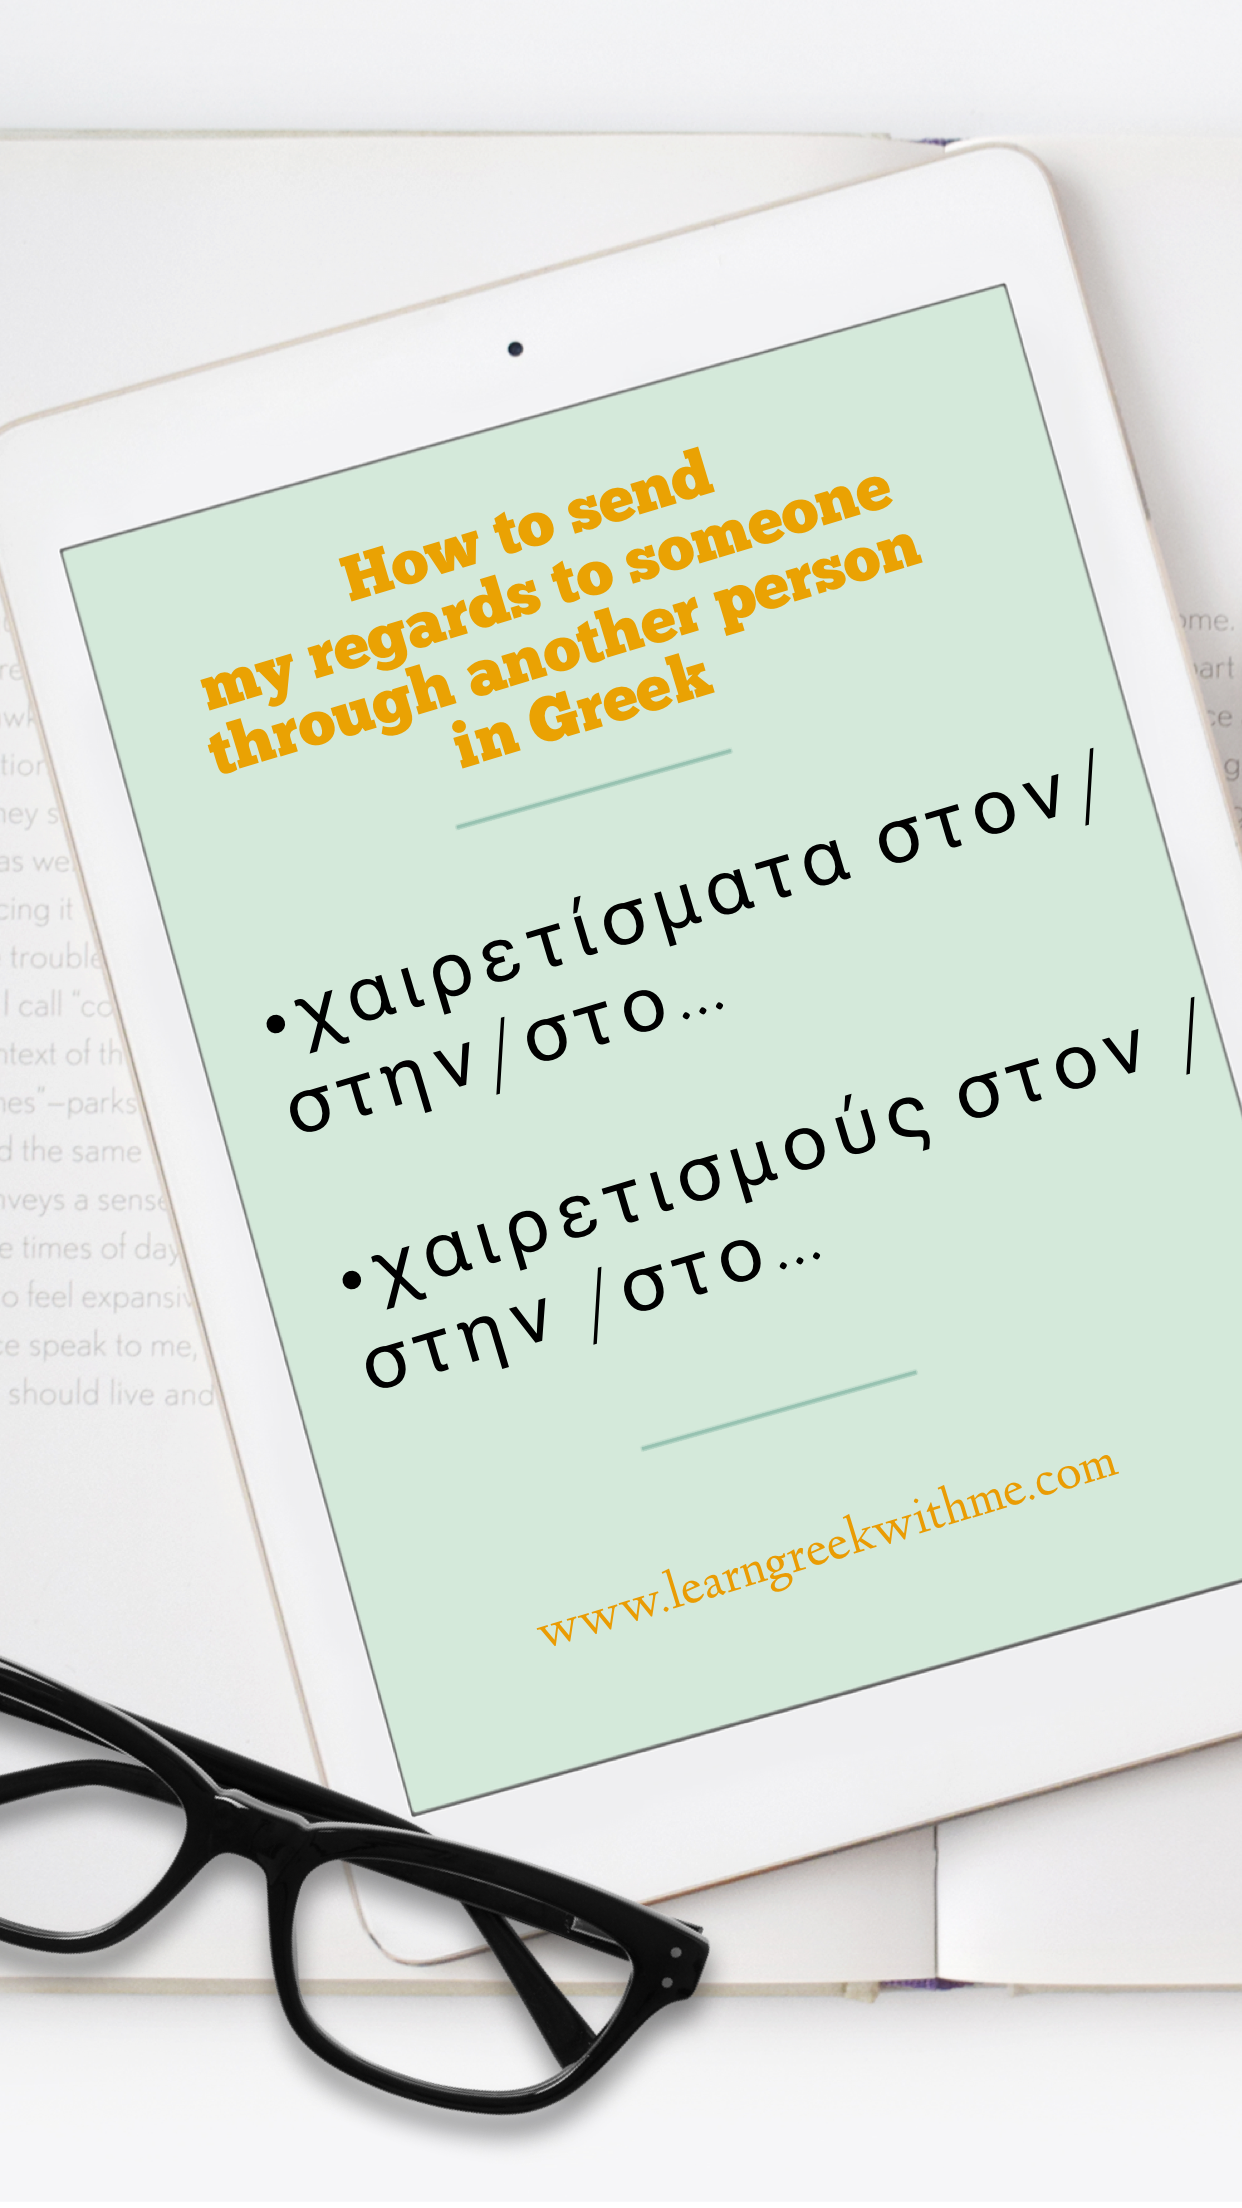 Giving your regards in Greek